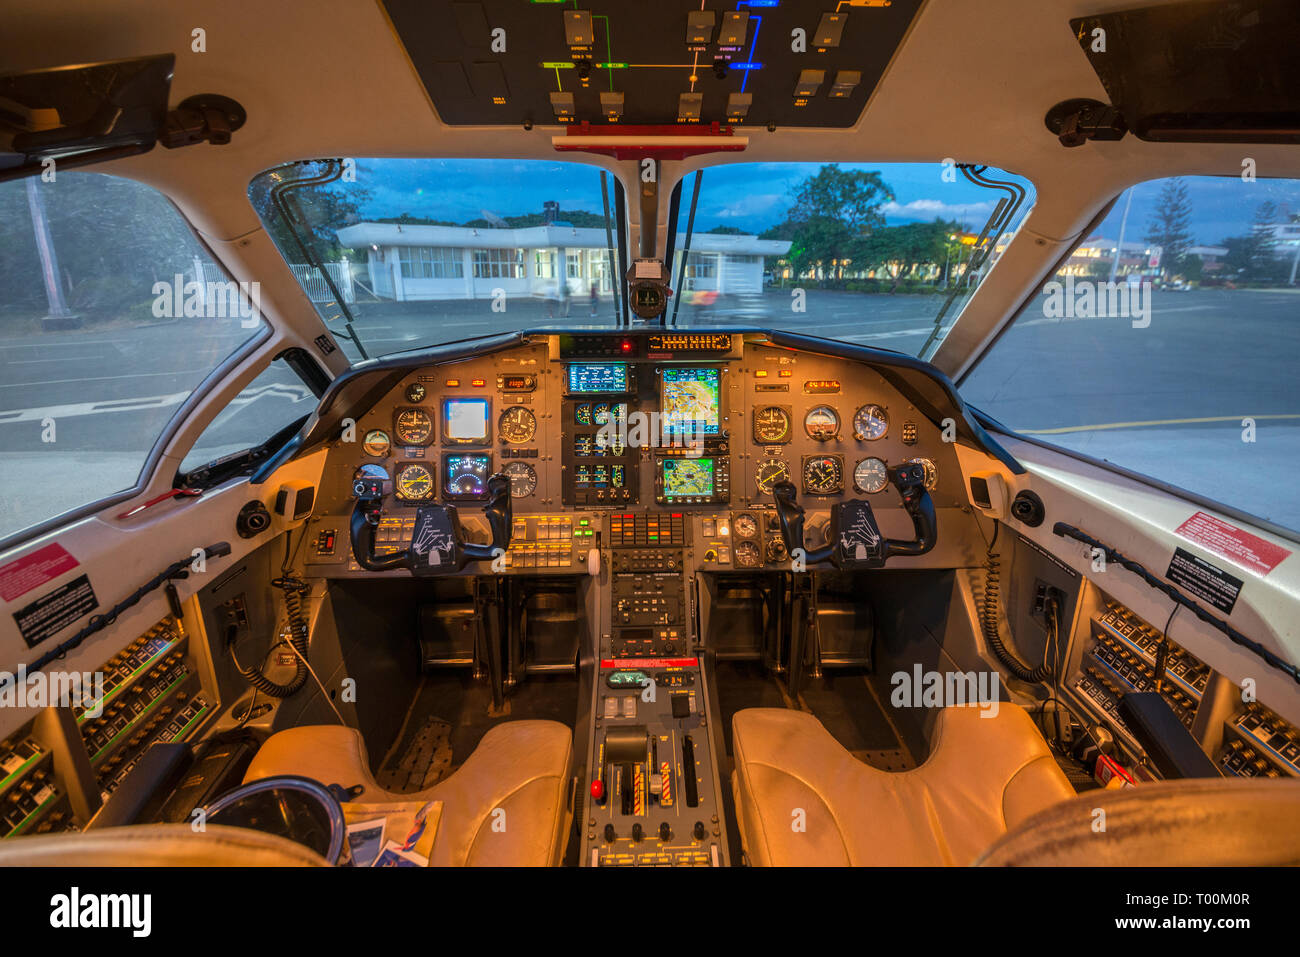 Al anochecer, se enciende la iluminación de la cabina de vuelo de un avión turbohélice Pilatus PC12. Foto de stock